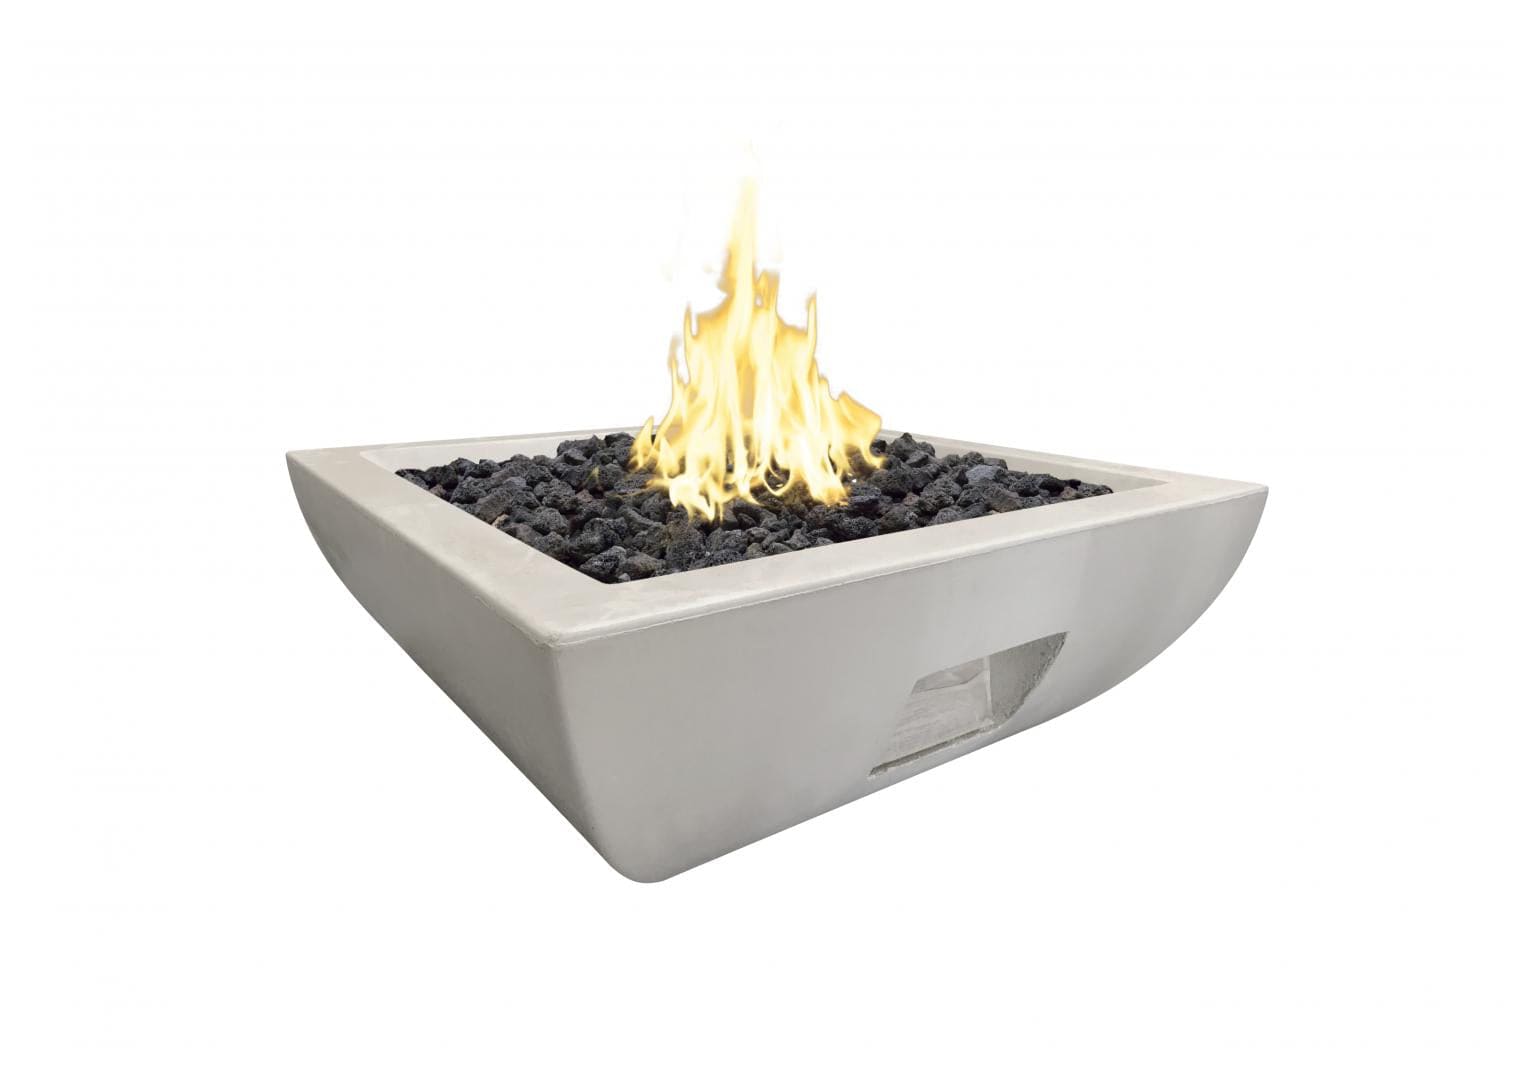 American Fyre Designs 36" Bordeaux Square Concrete Gas Fire Bowl